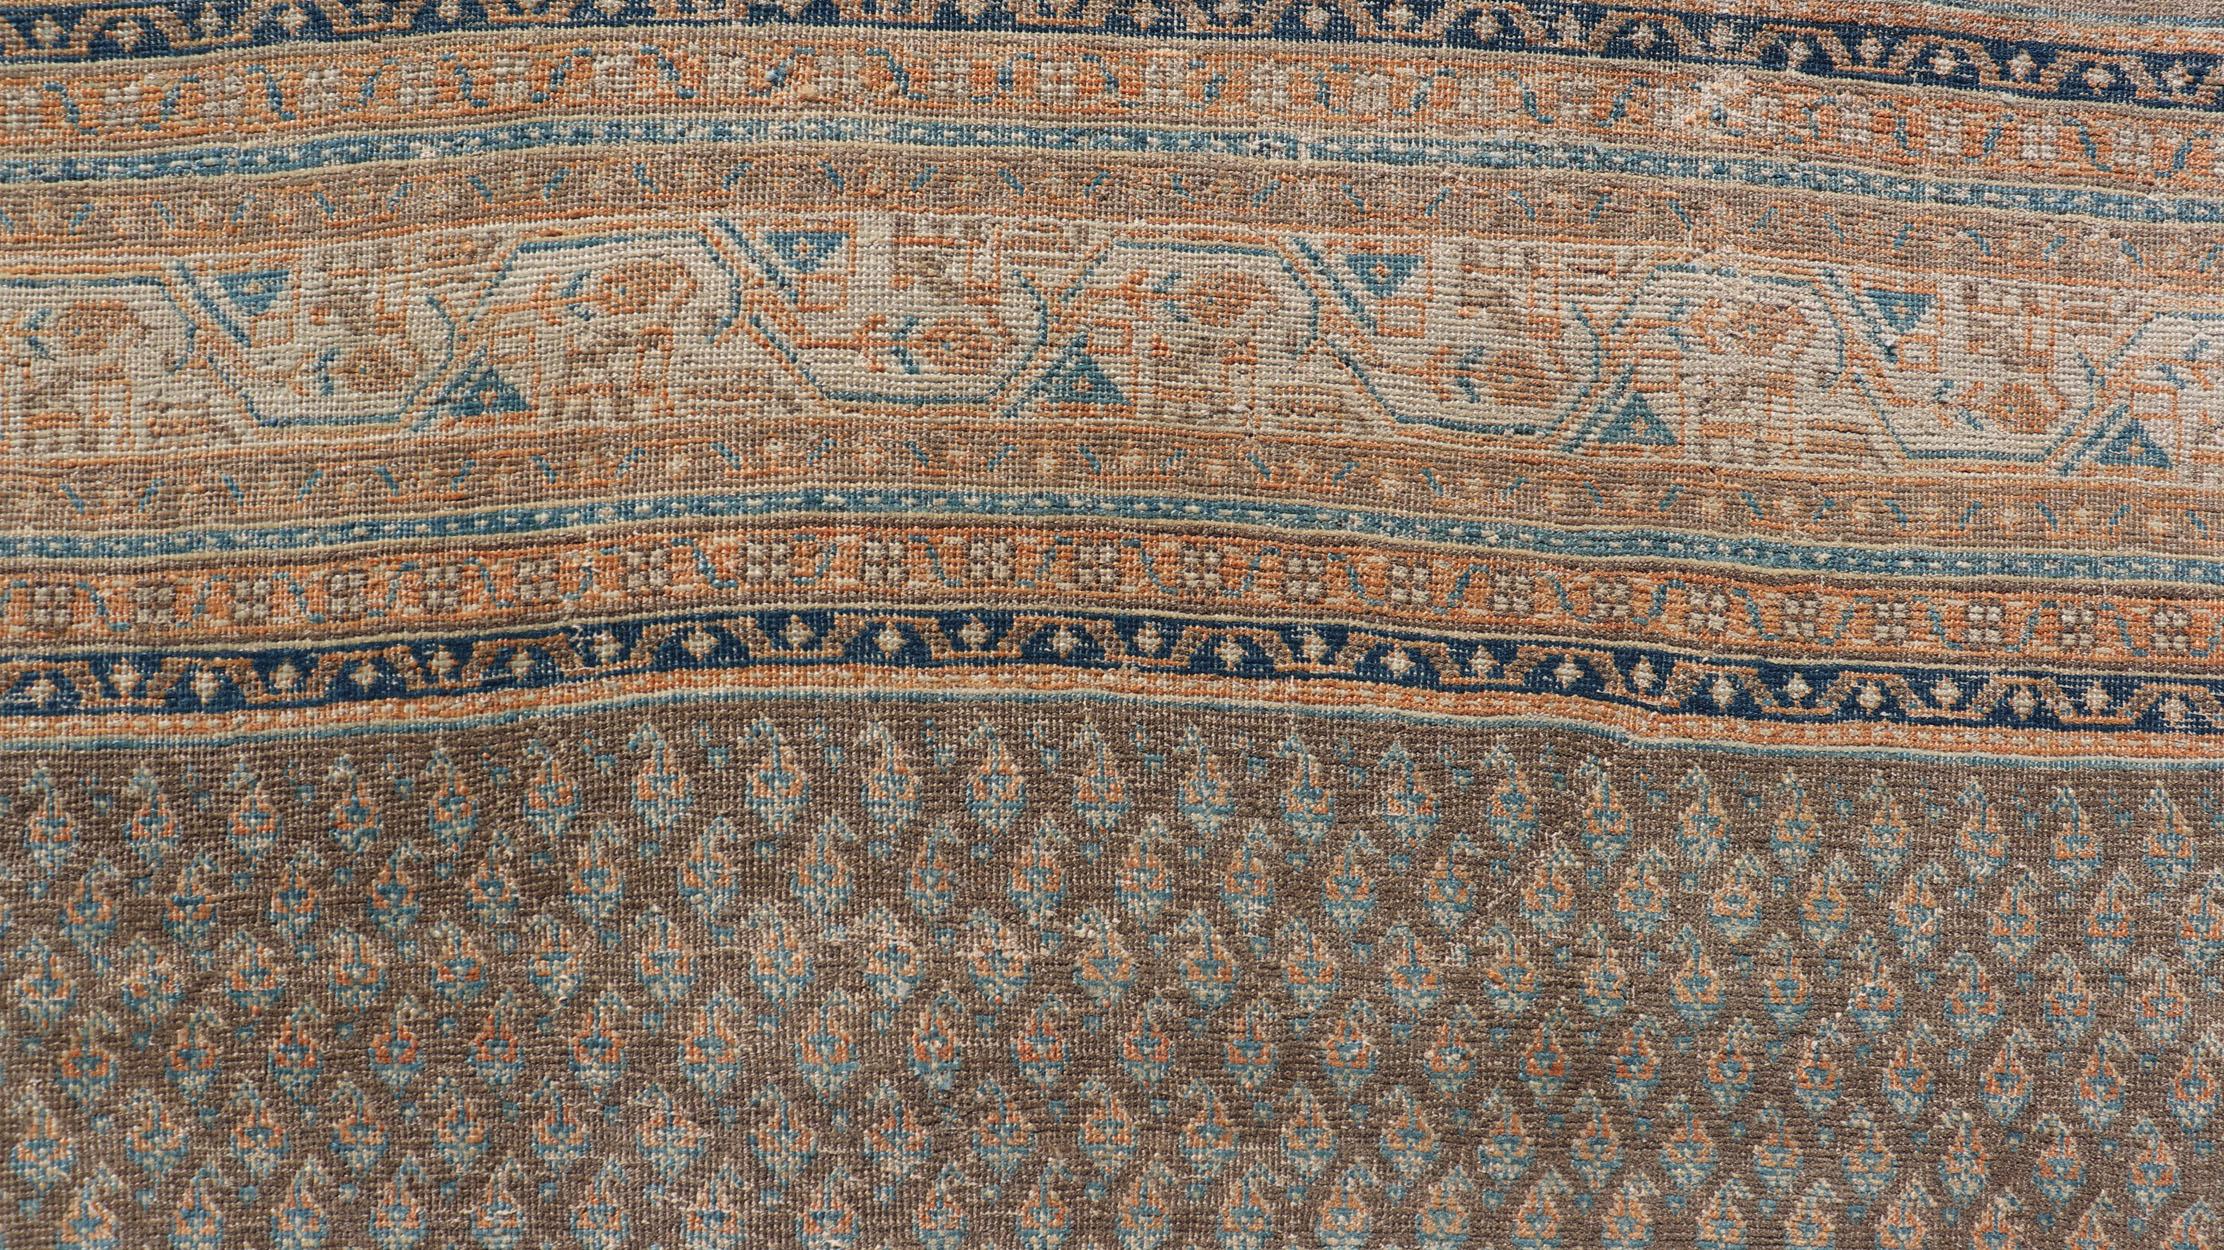 Persischer Tabriz-Teppich aus den 1930er Jahren mit kleinem All-Over-Motiv-Muster in Braun und Blau und neutralen Tönen. Keivan Woven Arts / Teppich VAS-50681, Herkunftsland / Art: Persisch / Täbris, ca. 1930er Jahre

Maße: 7'6 x 10'10 

Dieser